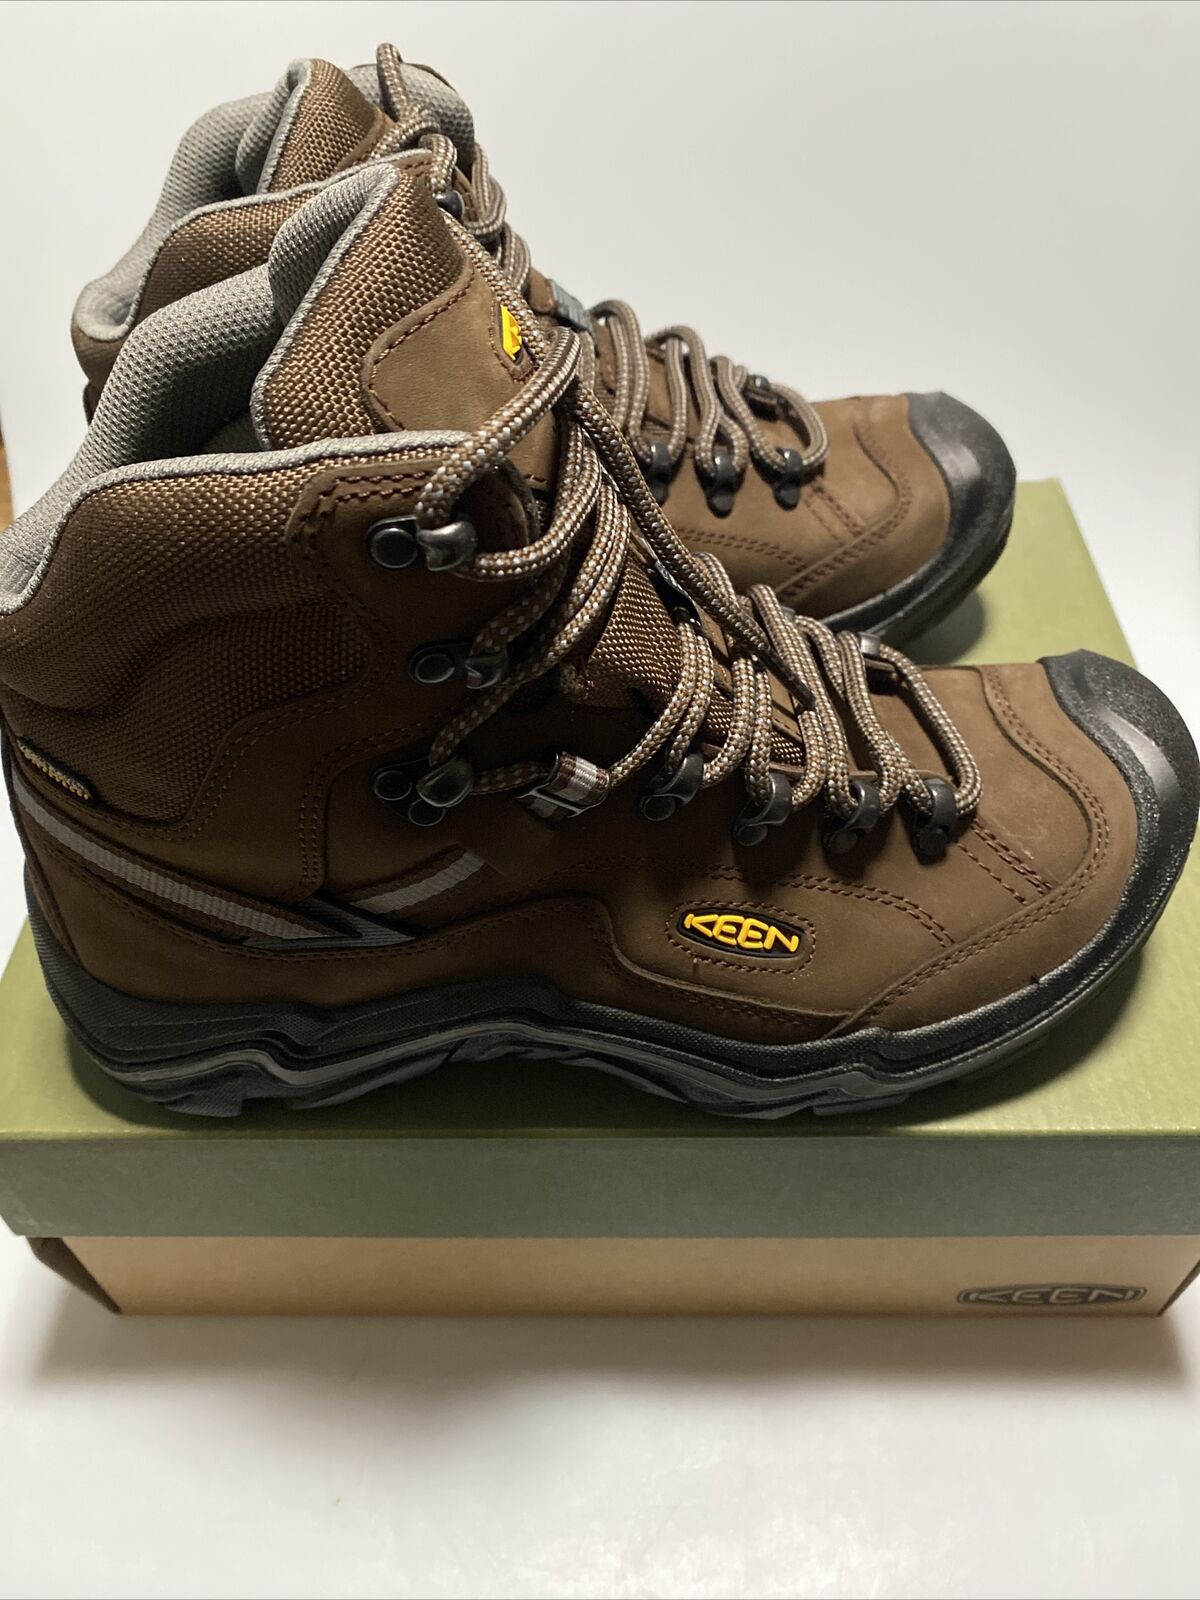 KEEN Outdoor 1020218 Men's Durand II Mid Waterproof Cascade Hiking Boots Shoes